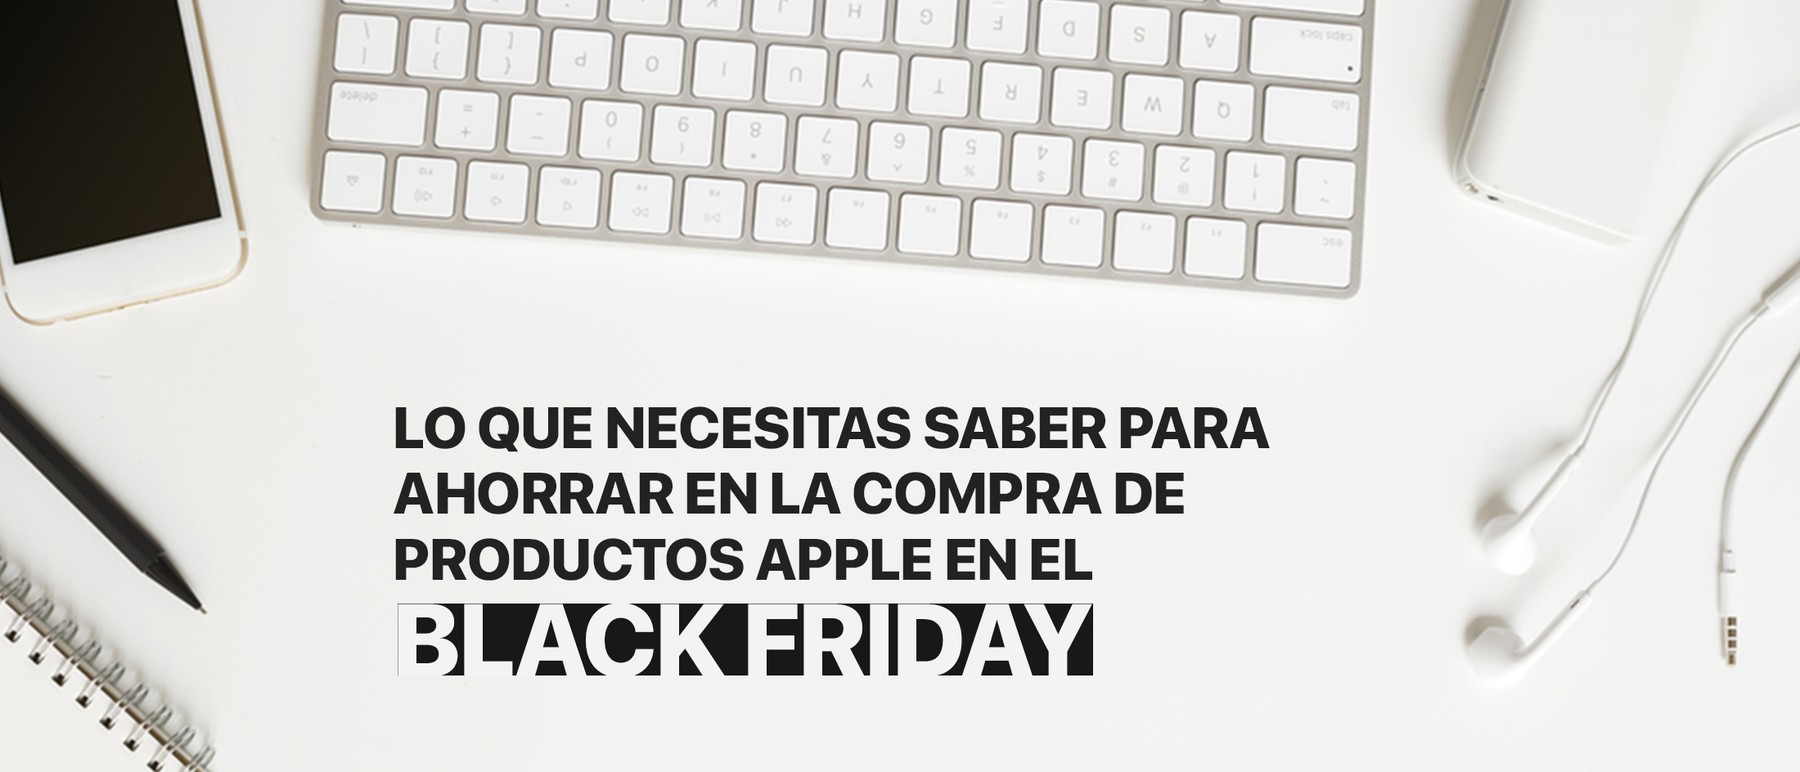 Todo lo que necesitas saber para ahorrar en productos Apple durante el Black Friday